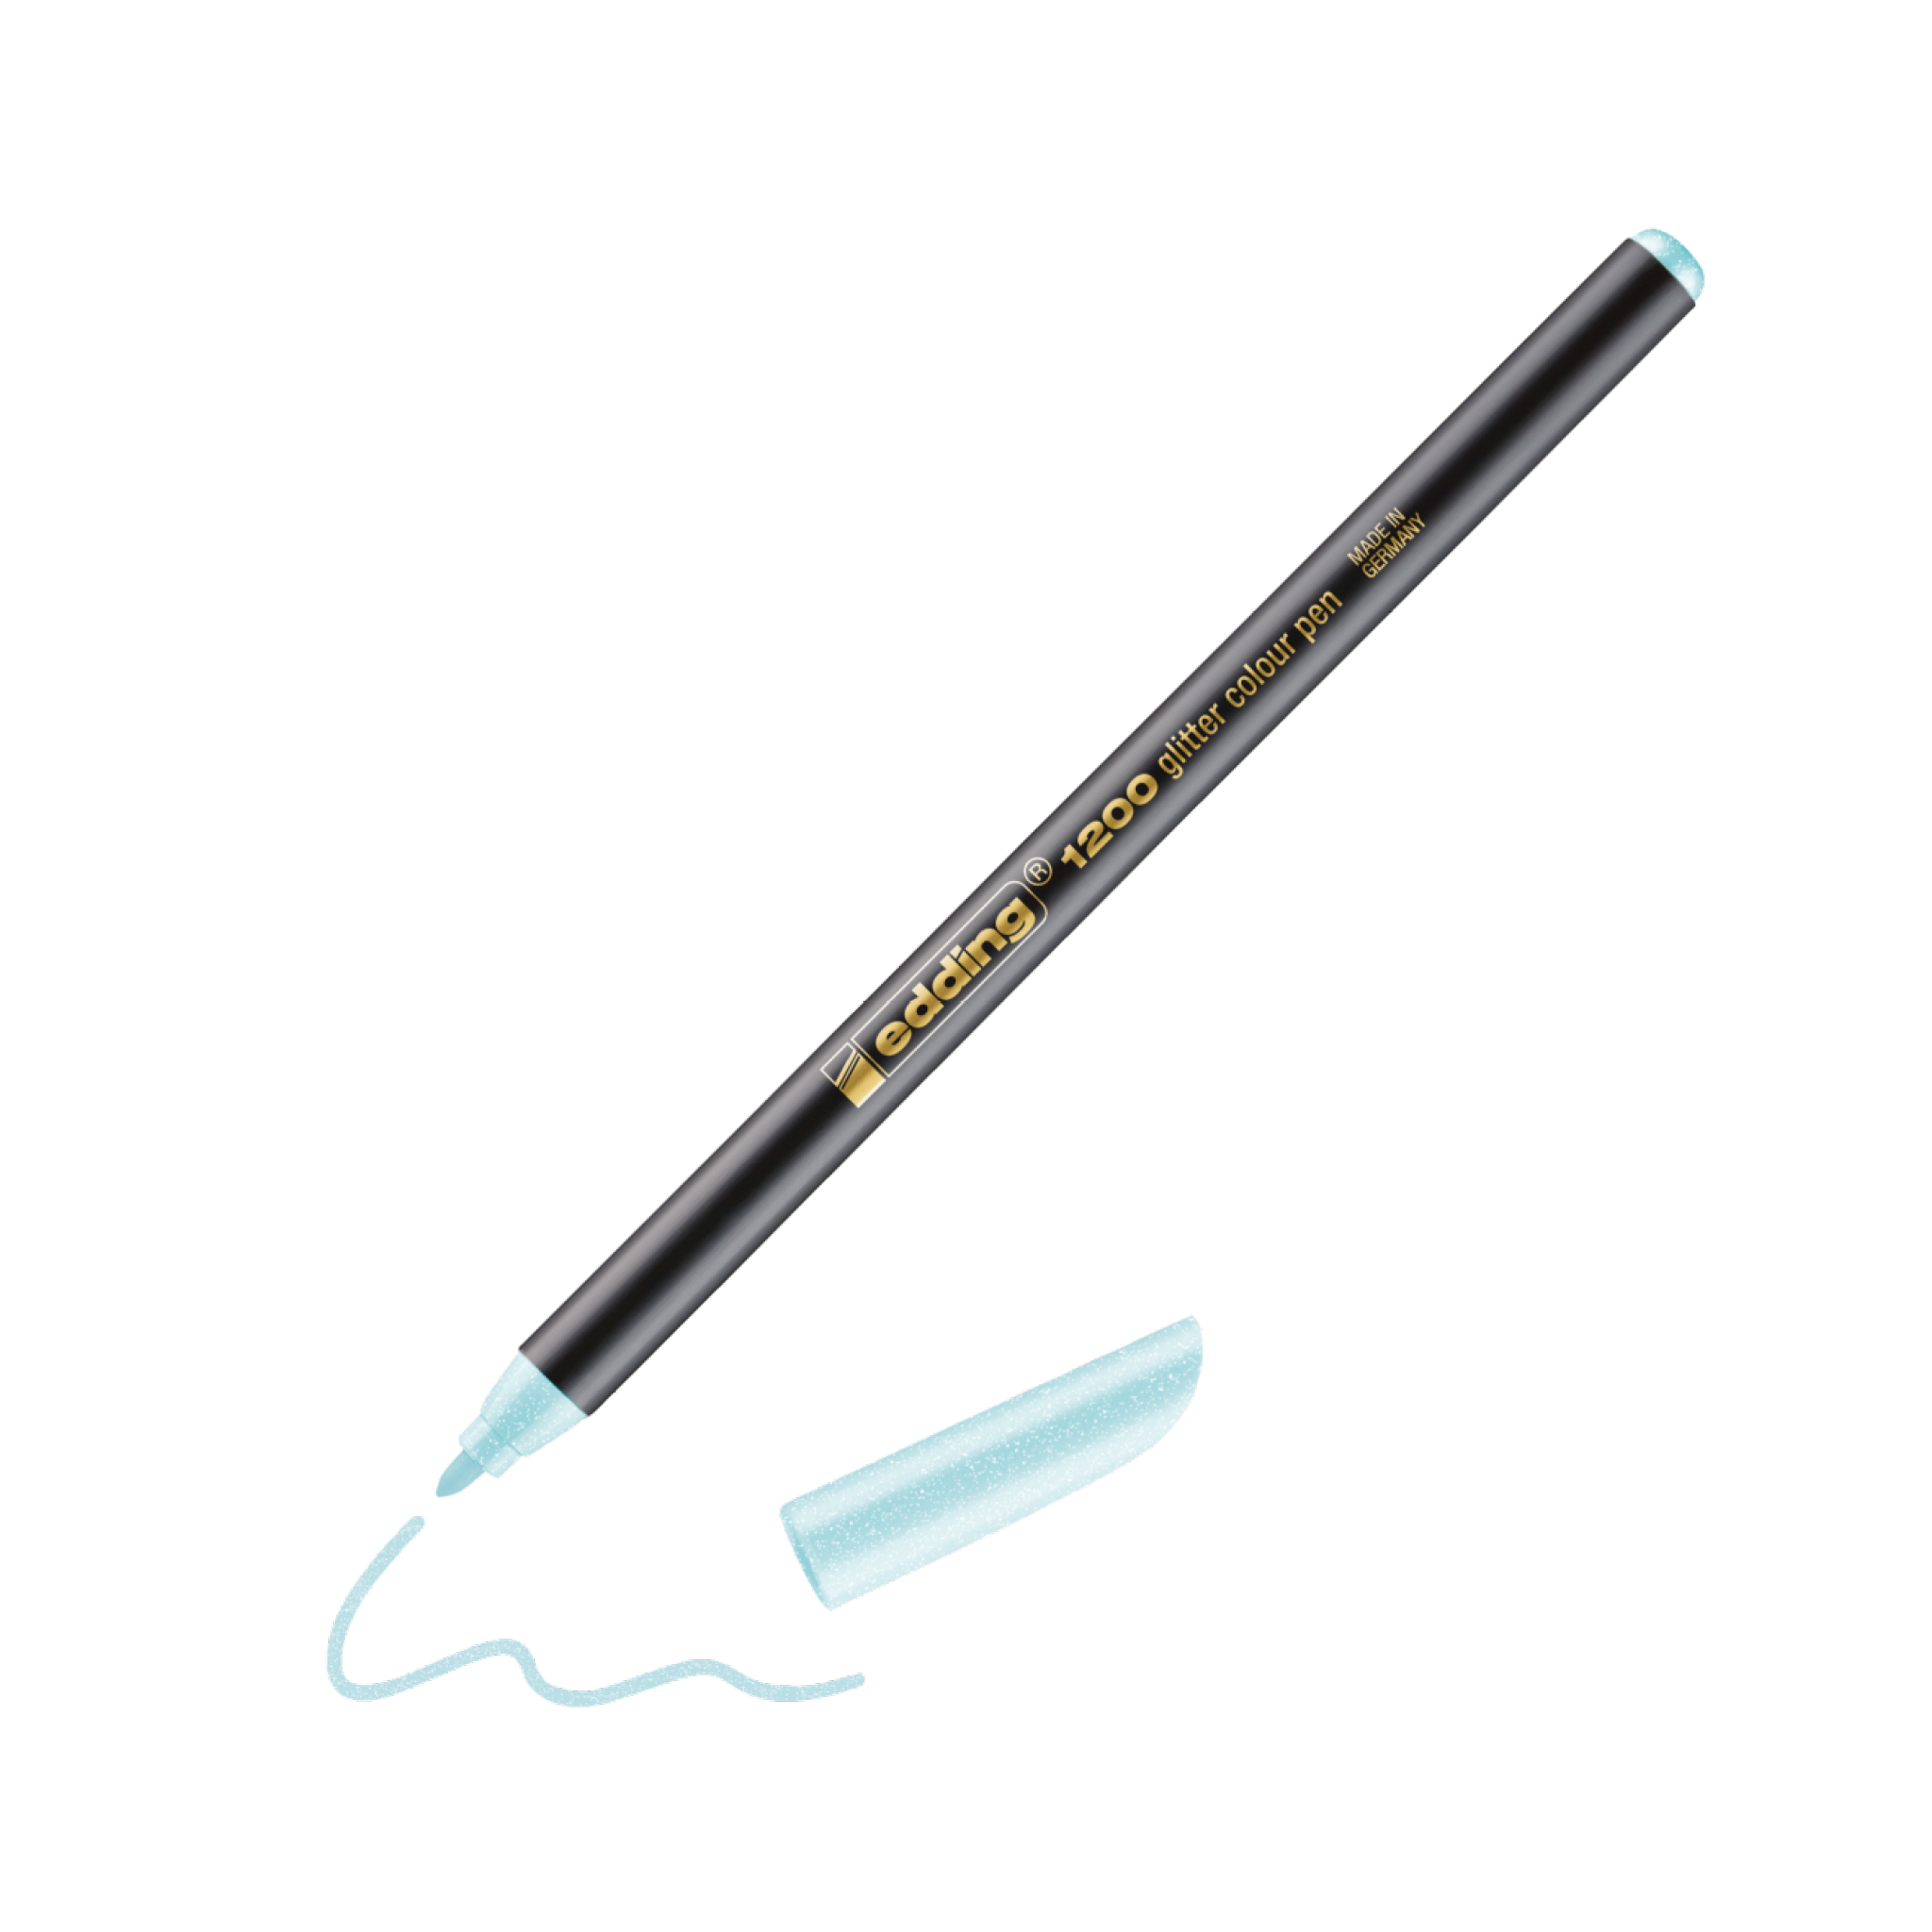 Ein schwarzer edding 1200 Glitzer Fasermaler mit abgenommener hellblauer Kappe, der eine Schlangenlinie auf weißem Untergrund zeichnet. Der Stift trägt die Aufschrift „0,8 Glitzergel“.